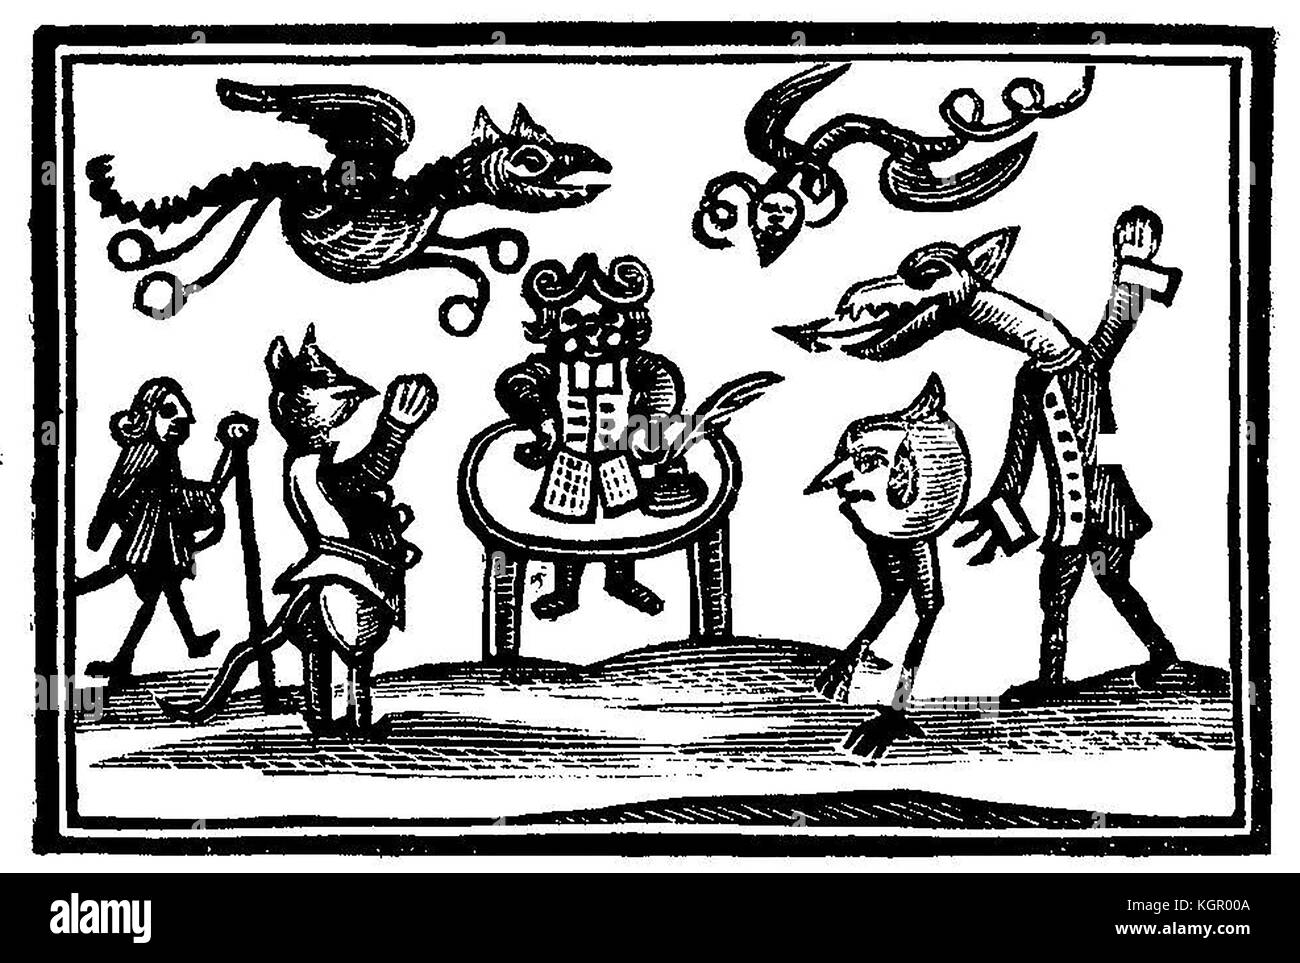 La sorcellerie - une ancienne gravure sur bois montrant une sorcière démons familiers, et des lutins Banque D'Images